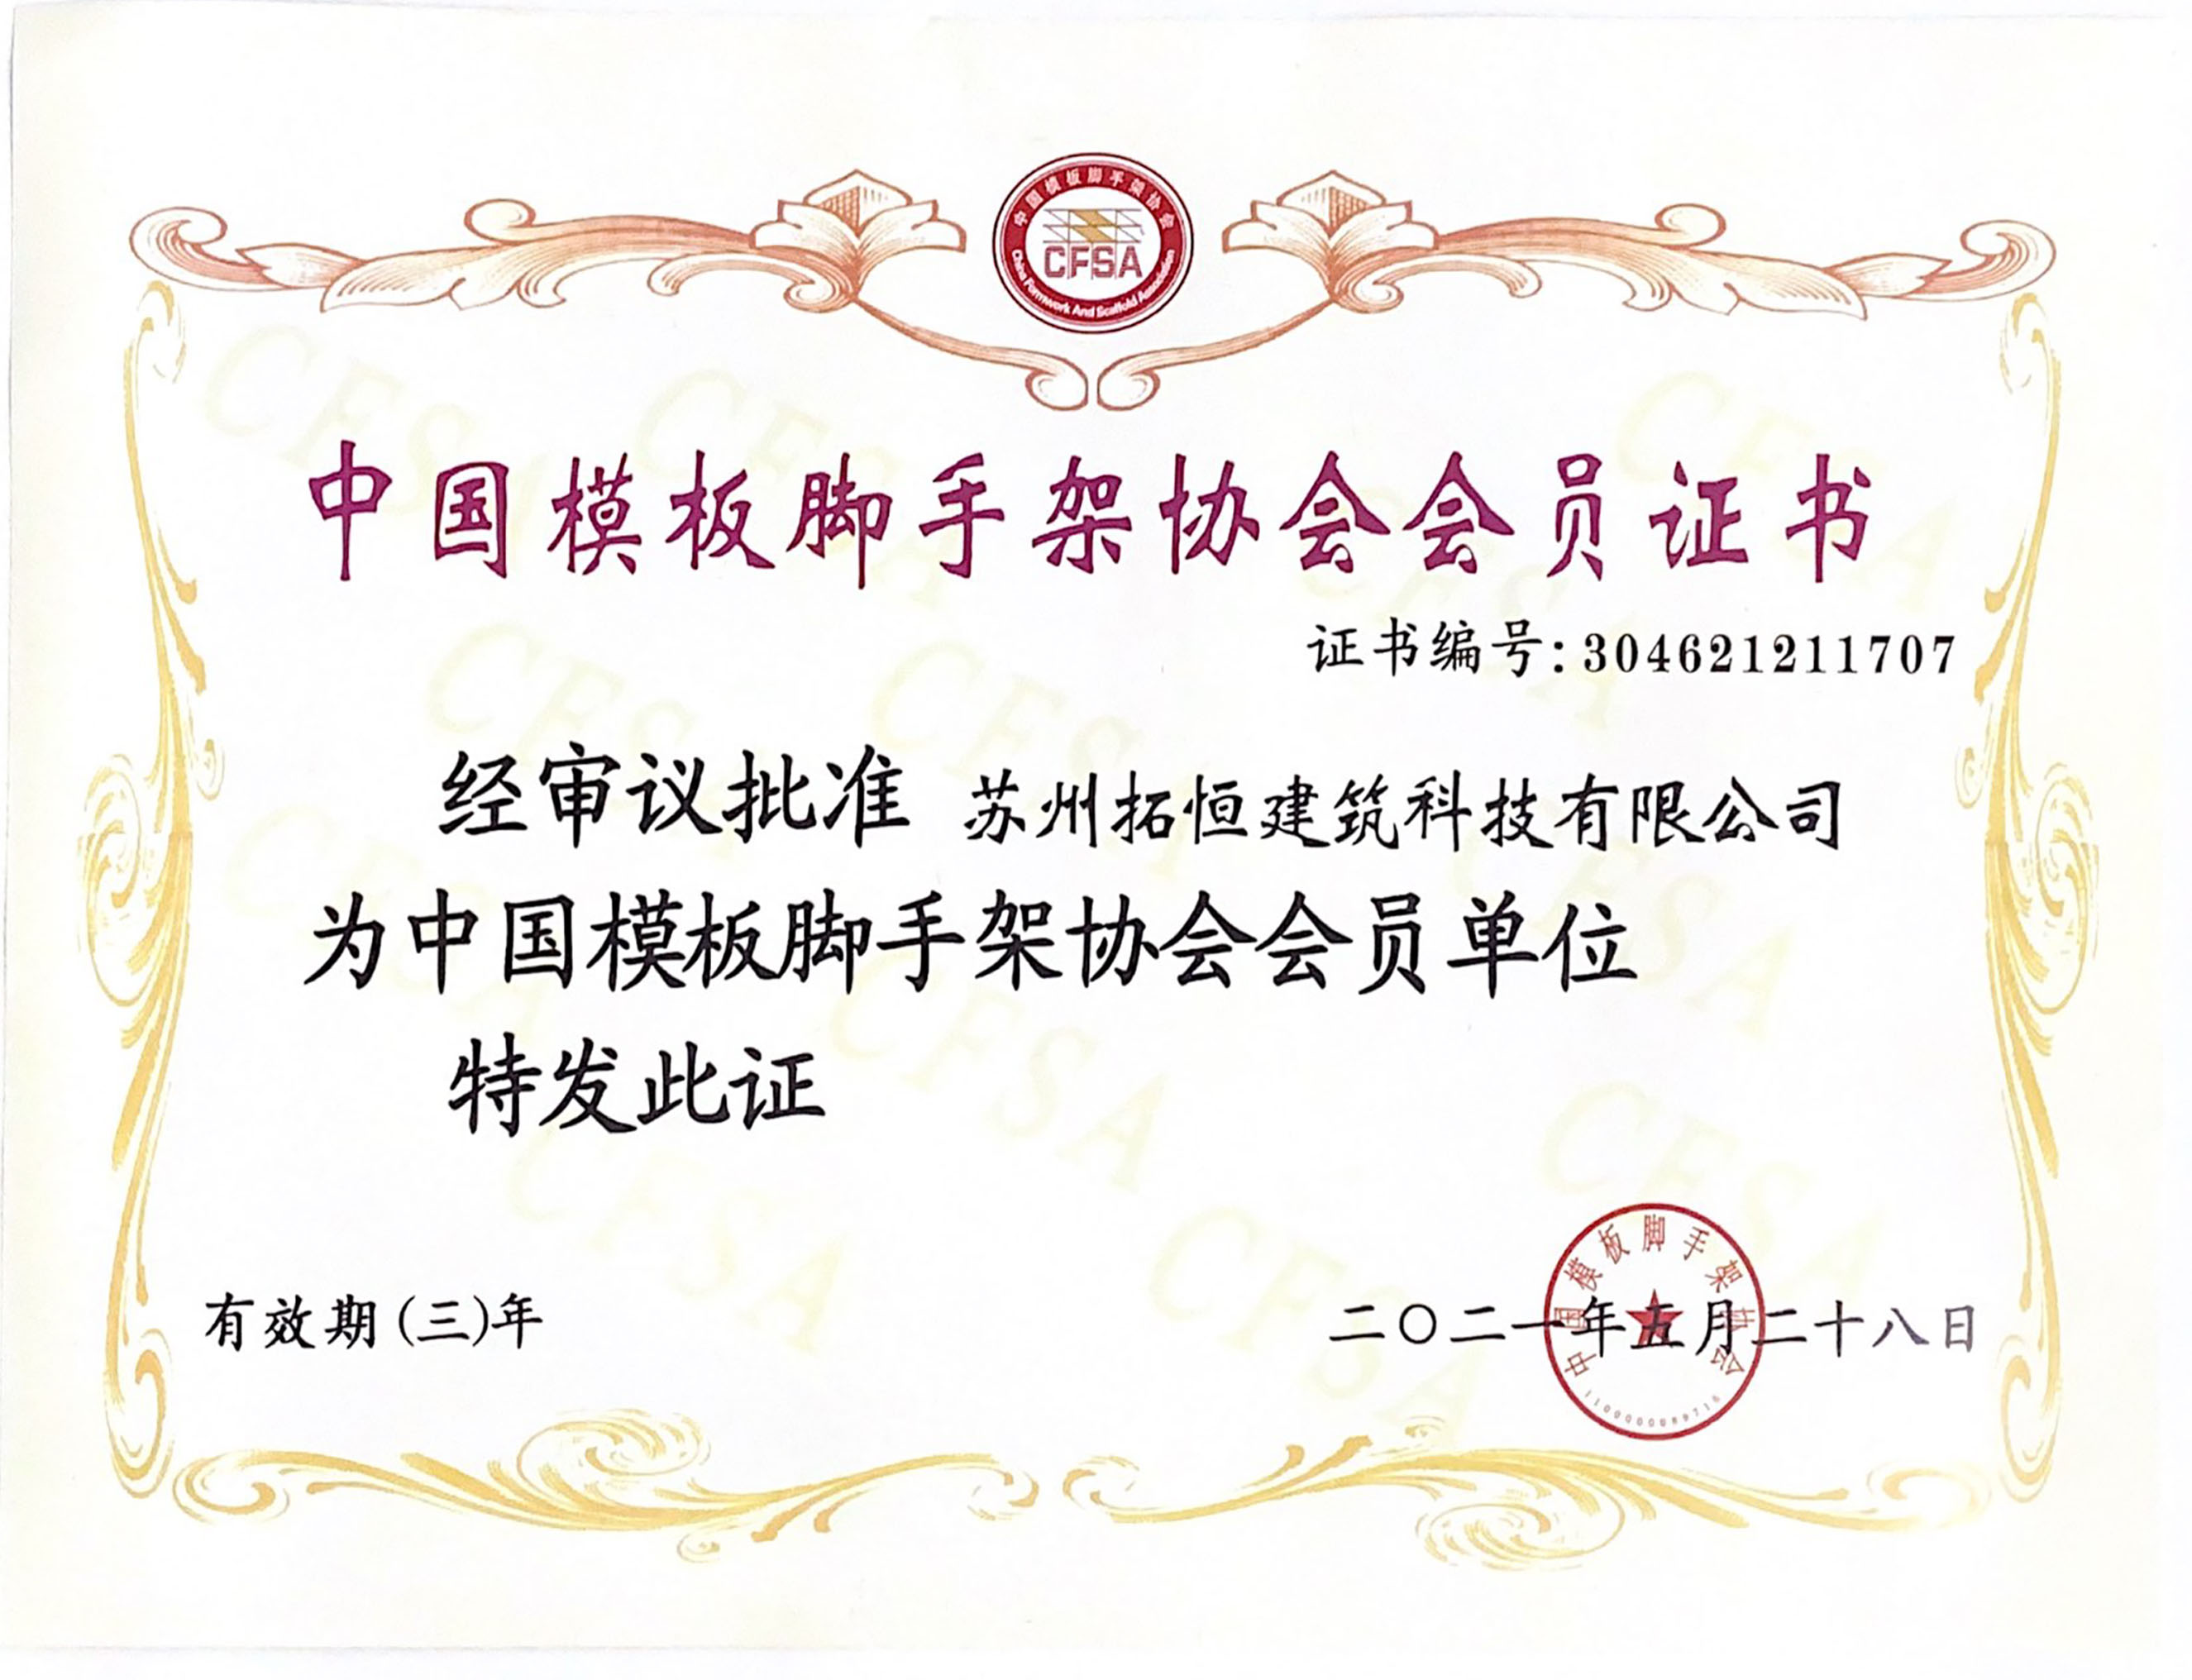 中国模板脚手架协会会员资格证书